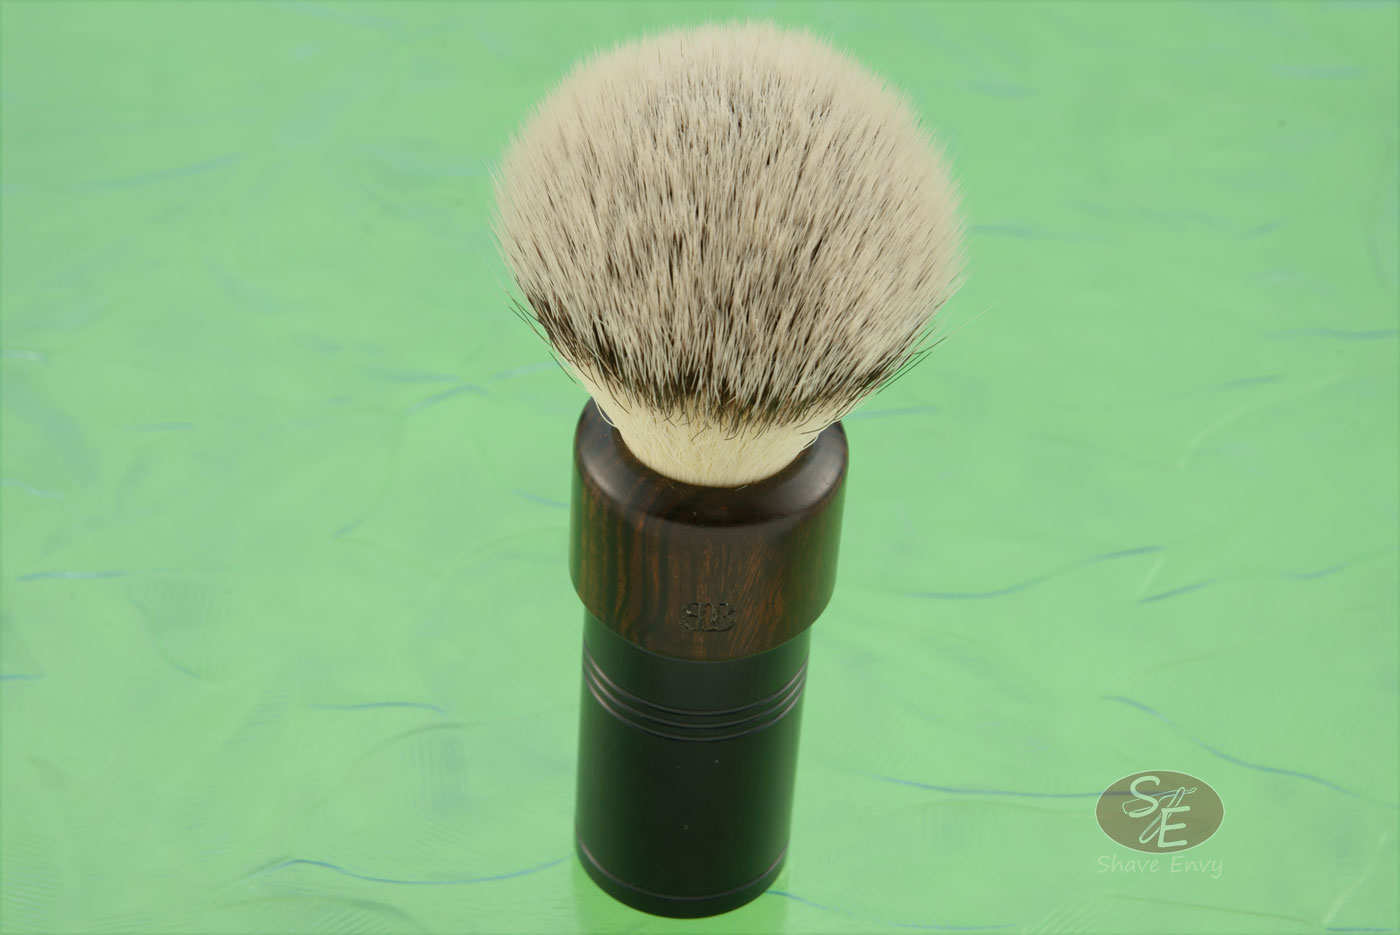 Shaving Brush with Ironwood and Black Aluminum, Synthetic Hybrid (24mm G-5 Knot)